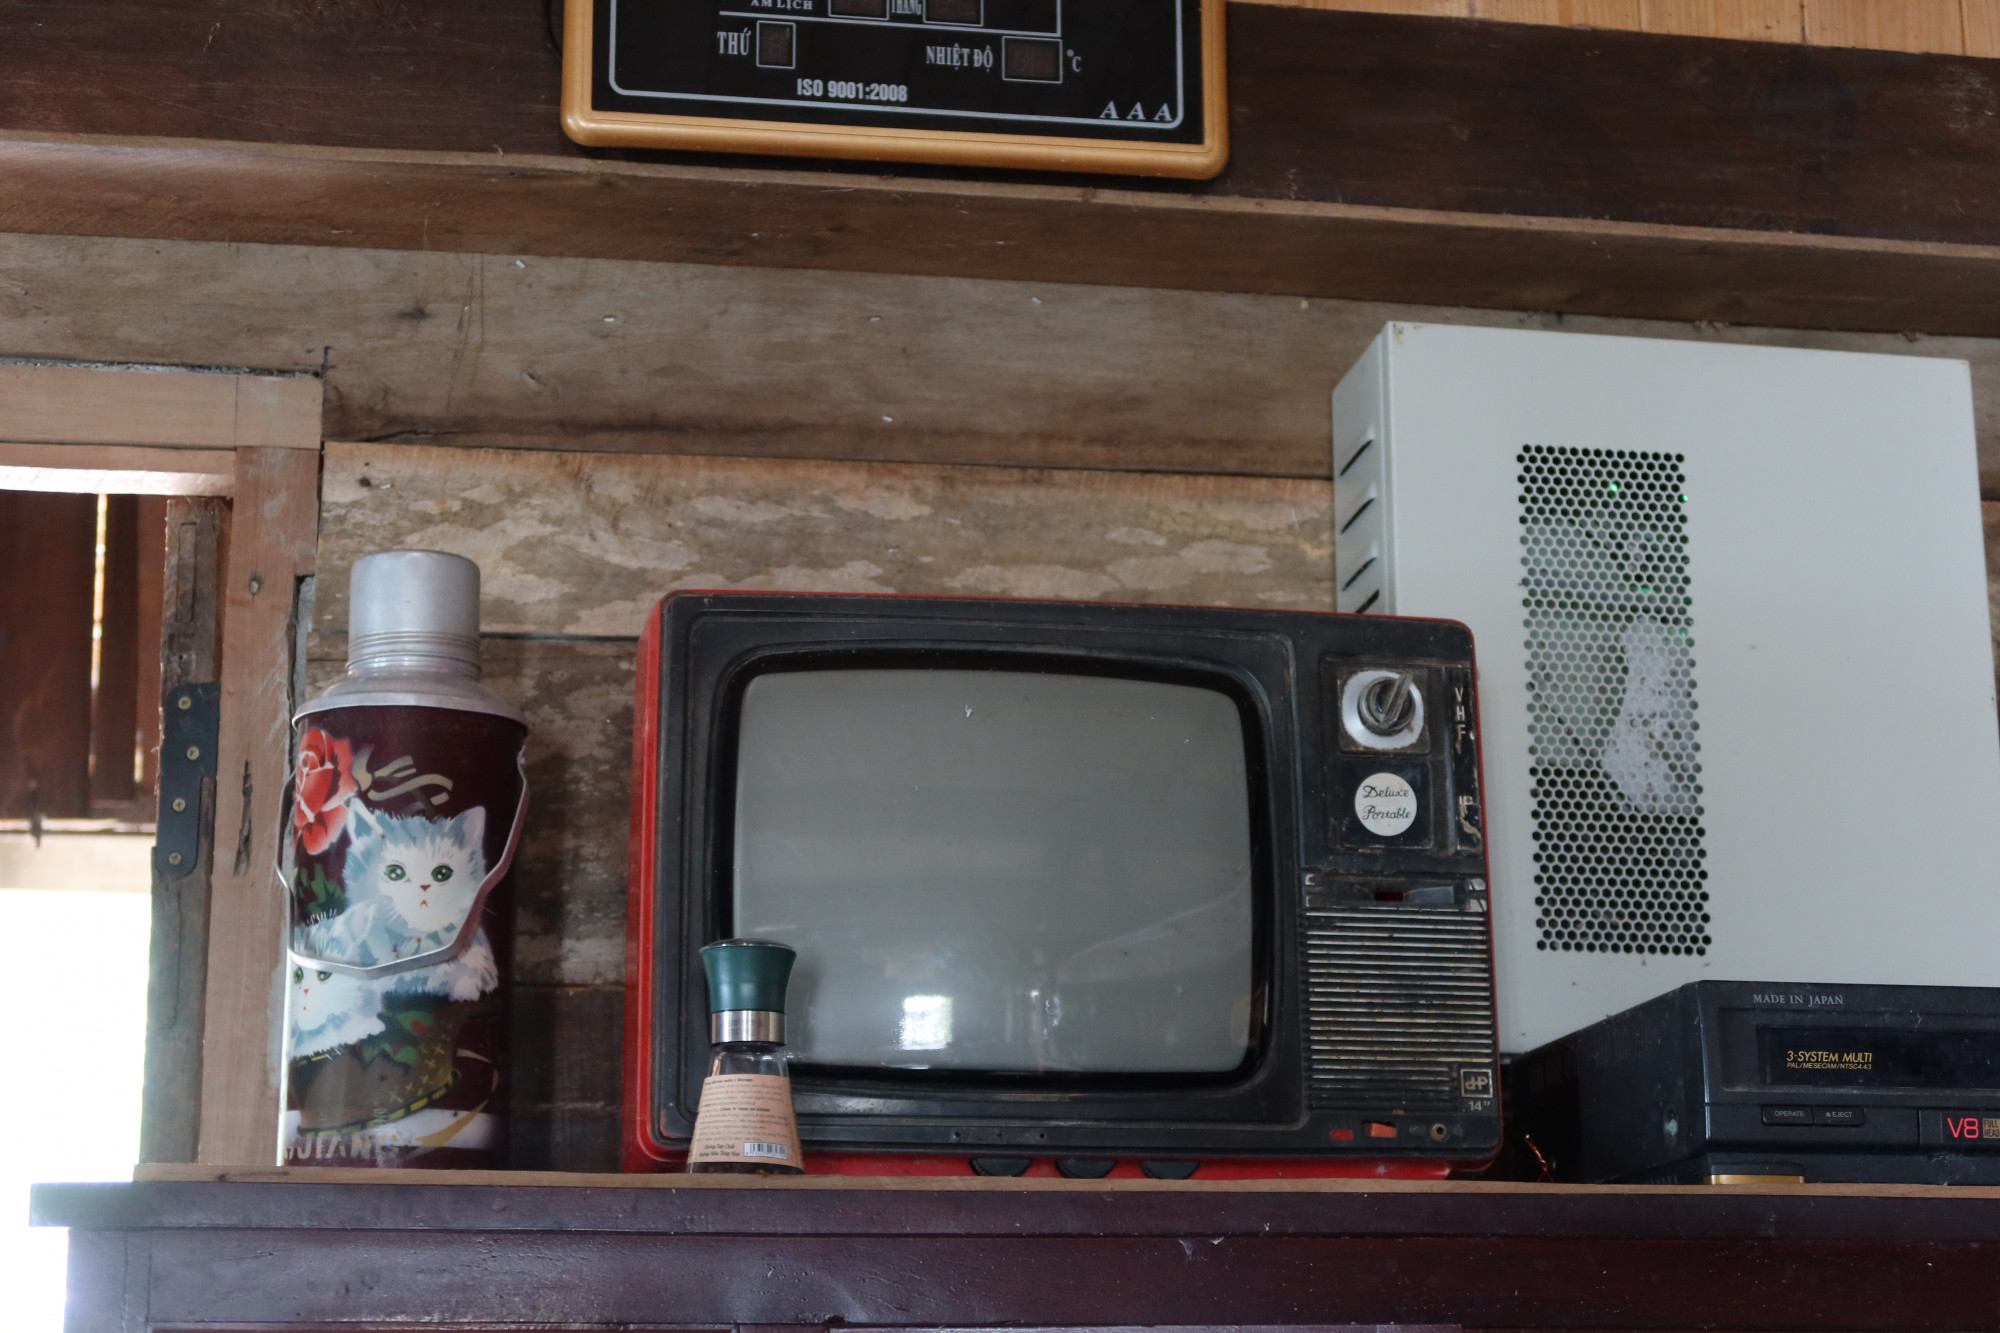 Chiếc tivi, phích nước cũ nằm trong bộ sưu tập Nơi thời gian ngừng lại.